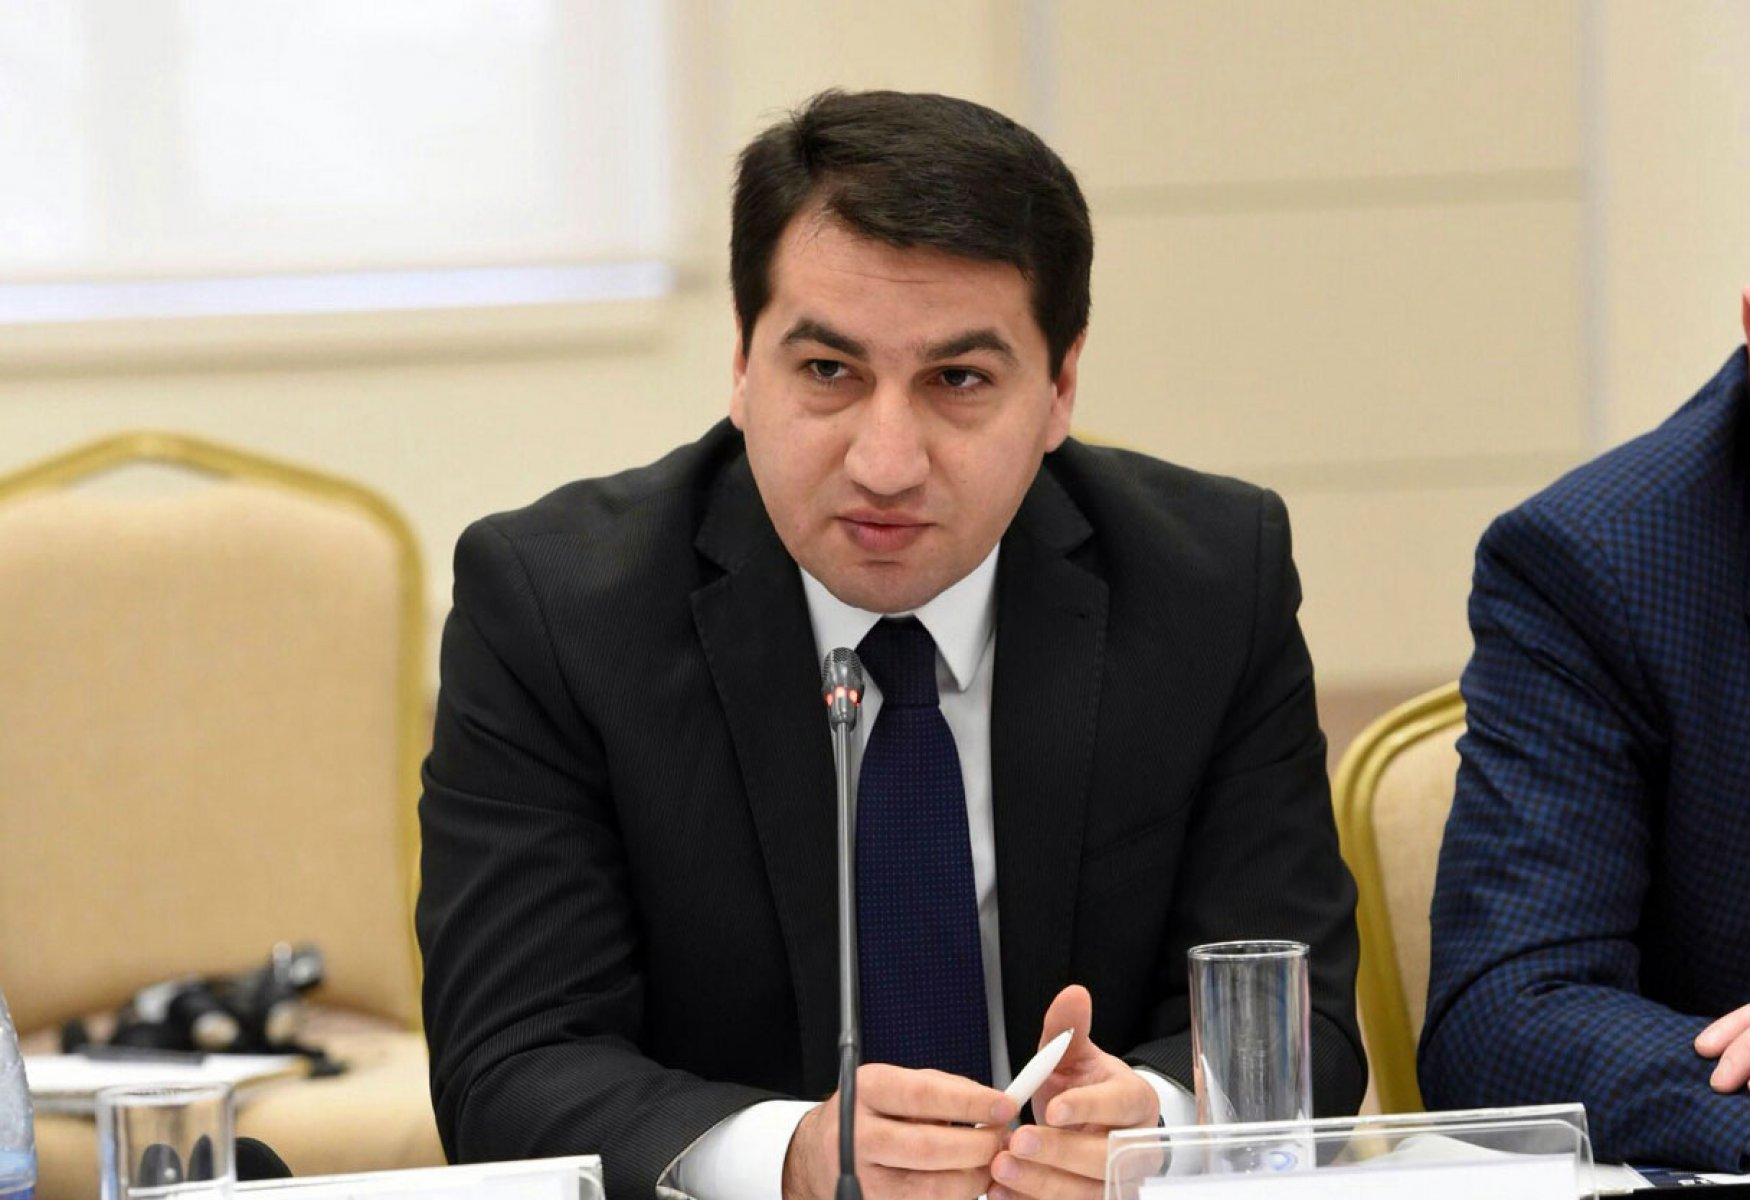 Хикмет Гаджиев: Для Азербайджана эта резолюция - не что иное, как обычный клочок бумаги